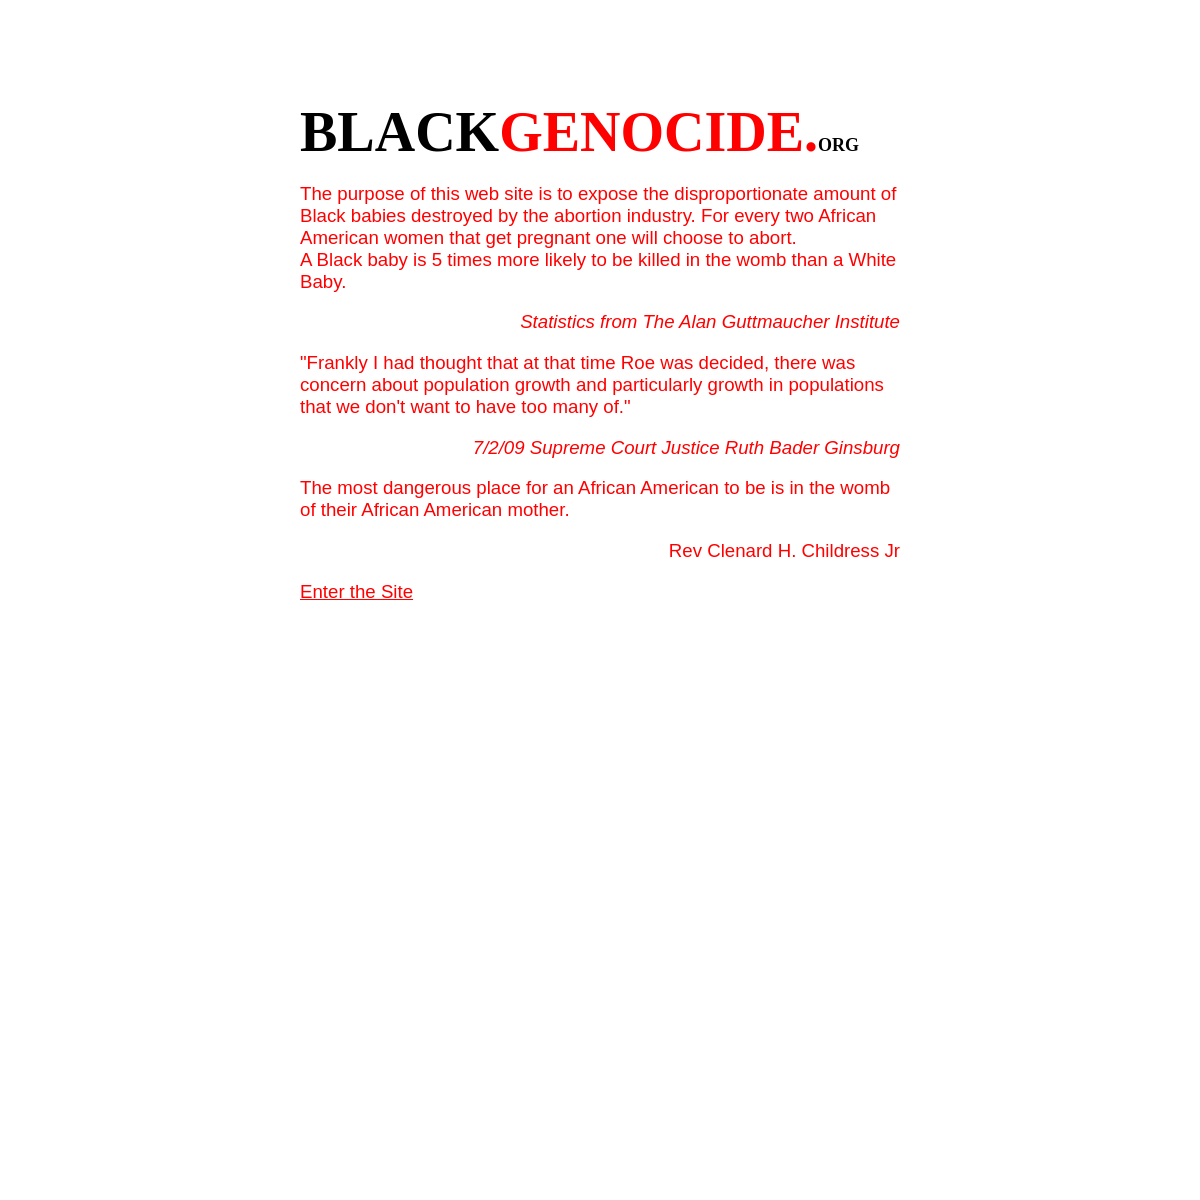 A complete backup of blackgenocide.org